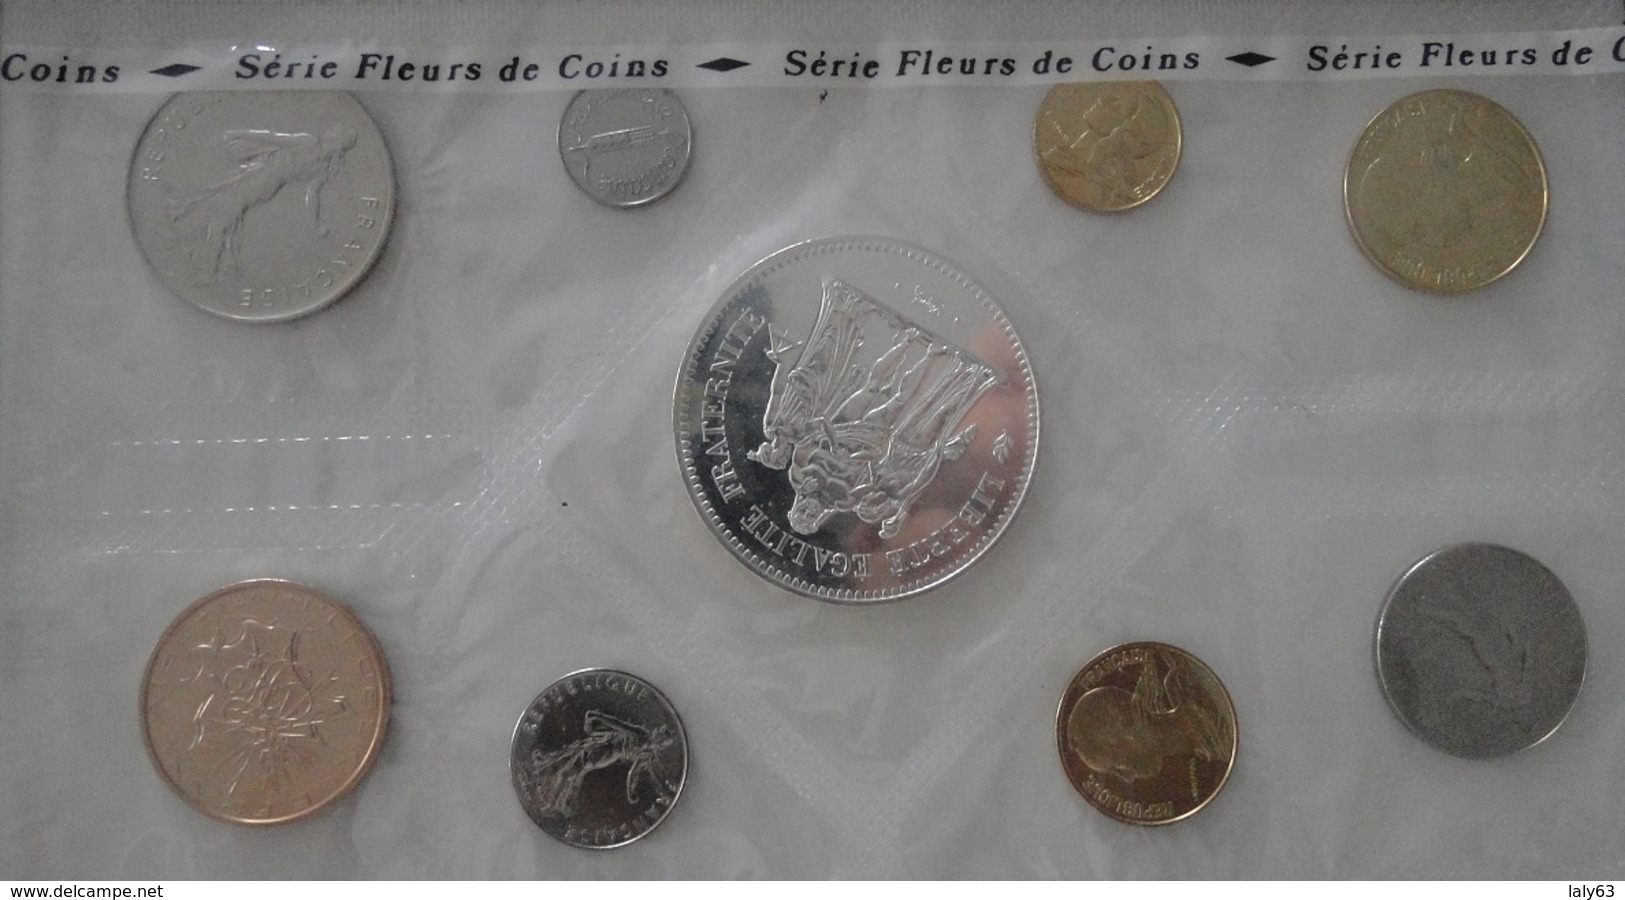 Fleurs De Coins 1974 - Collections